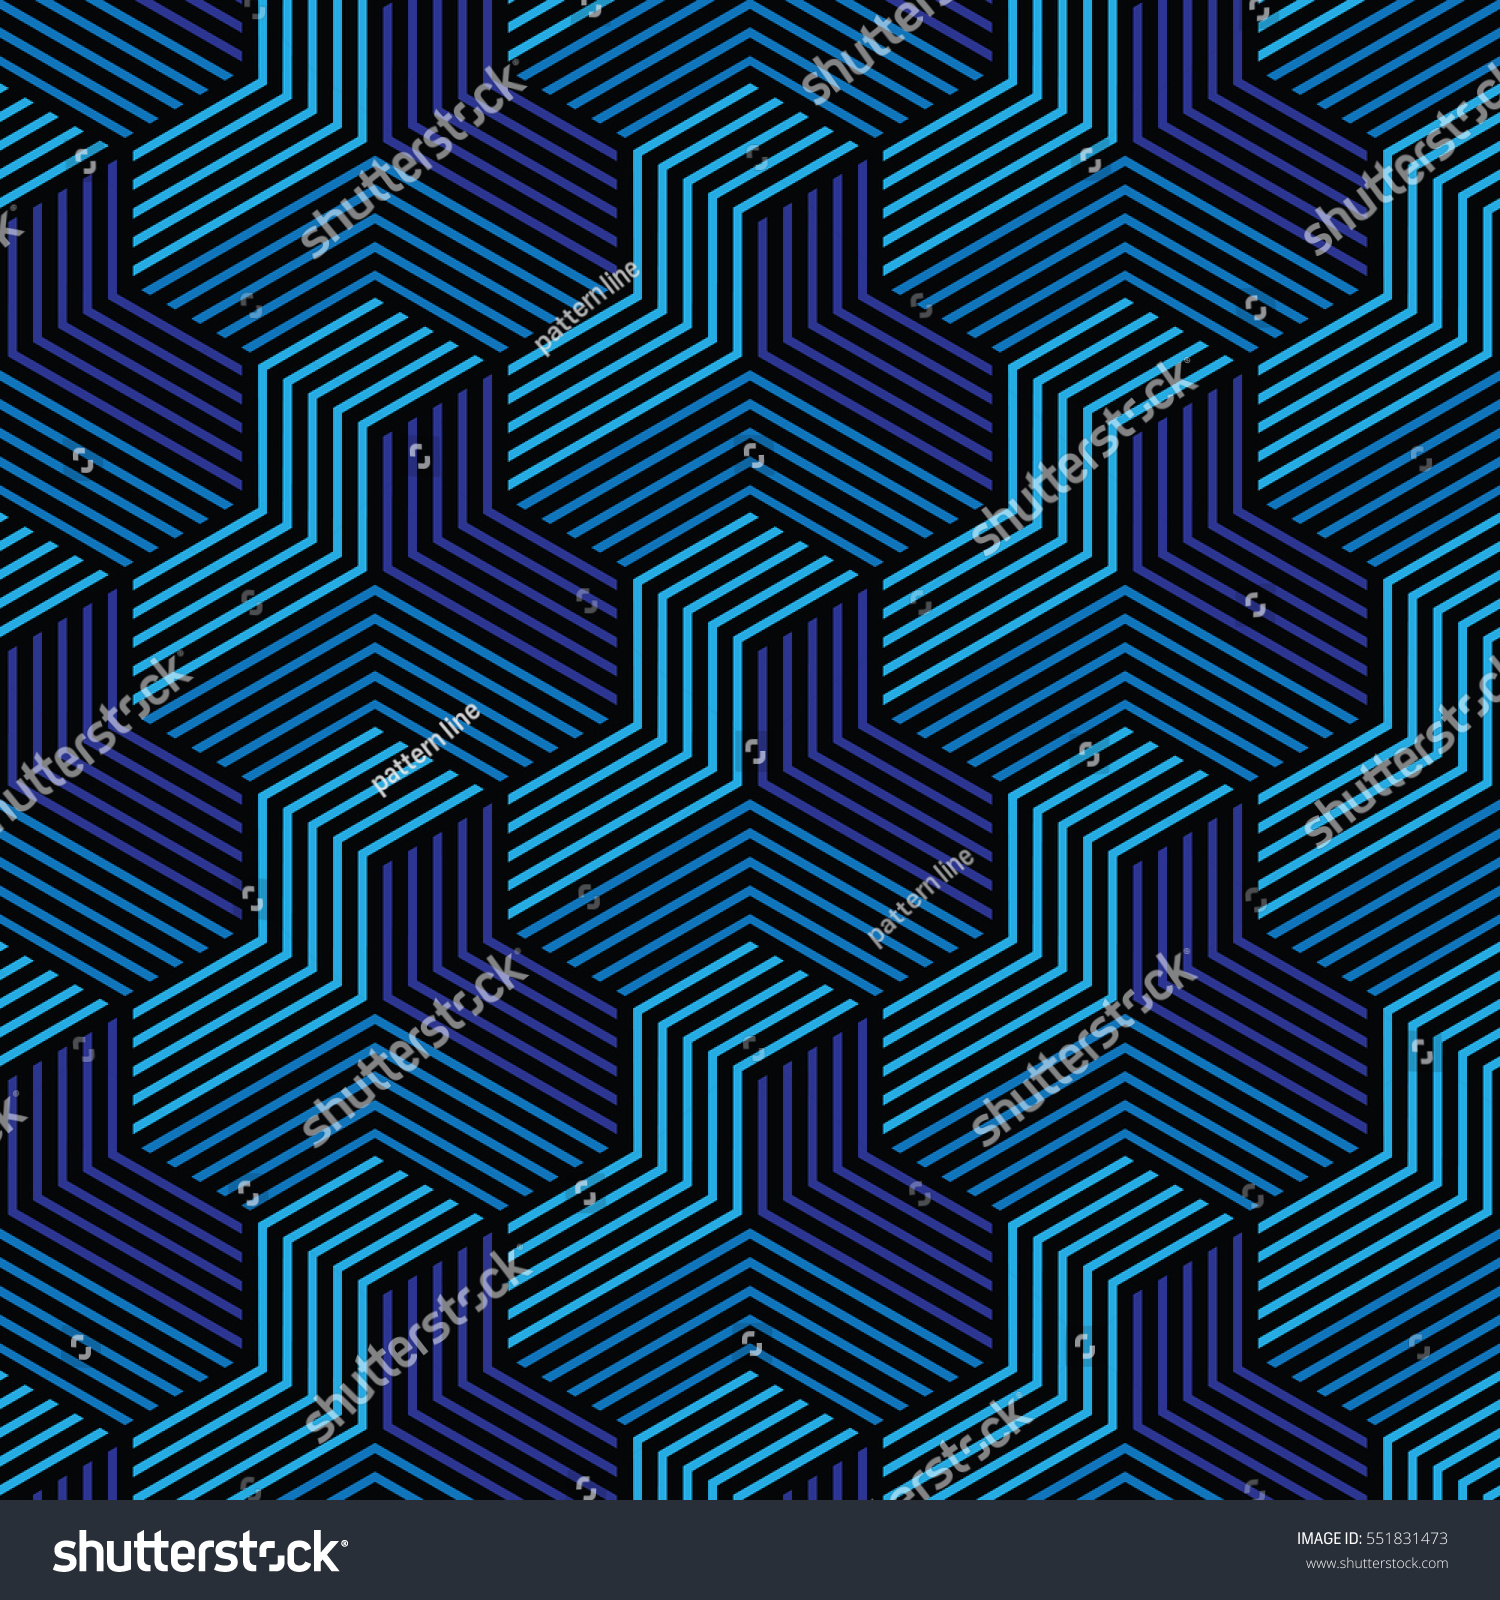 青と黒のパターン 背景に線の幾何学的 モダンなスタイリッシュテクスチャー ベクター画像 のベクター画像素材 ロイヤリティフリー